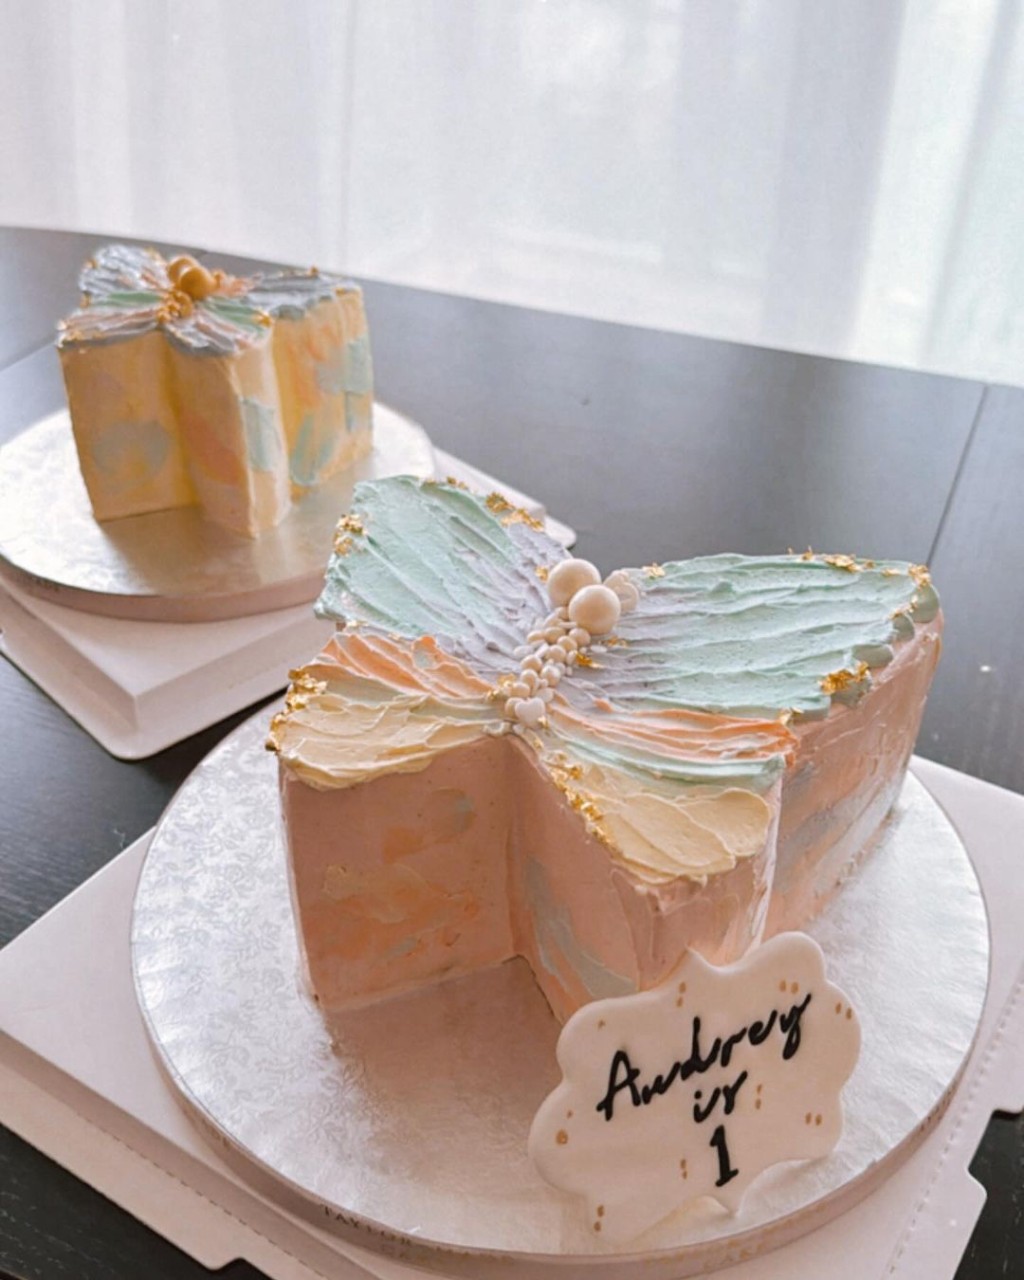 陈柏宇的好友为Audrey亲手整生日蛋糕。